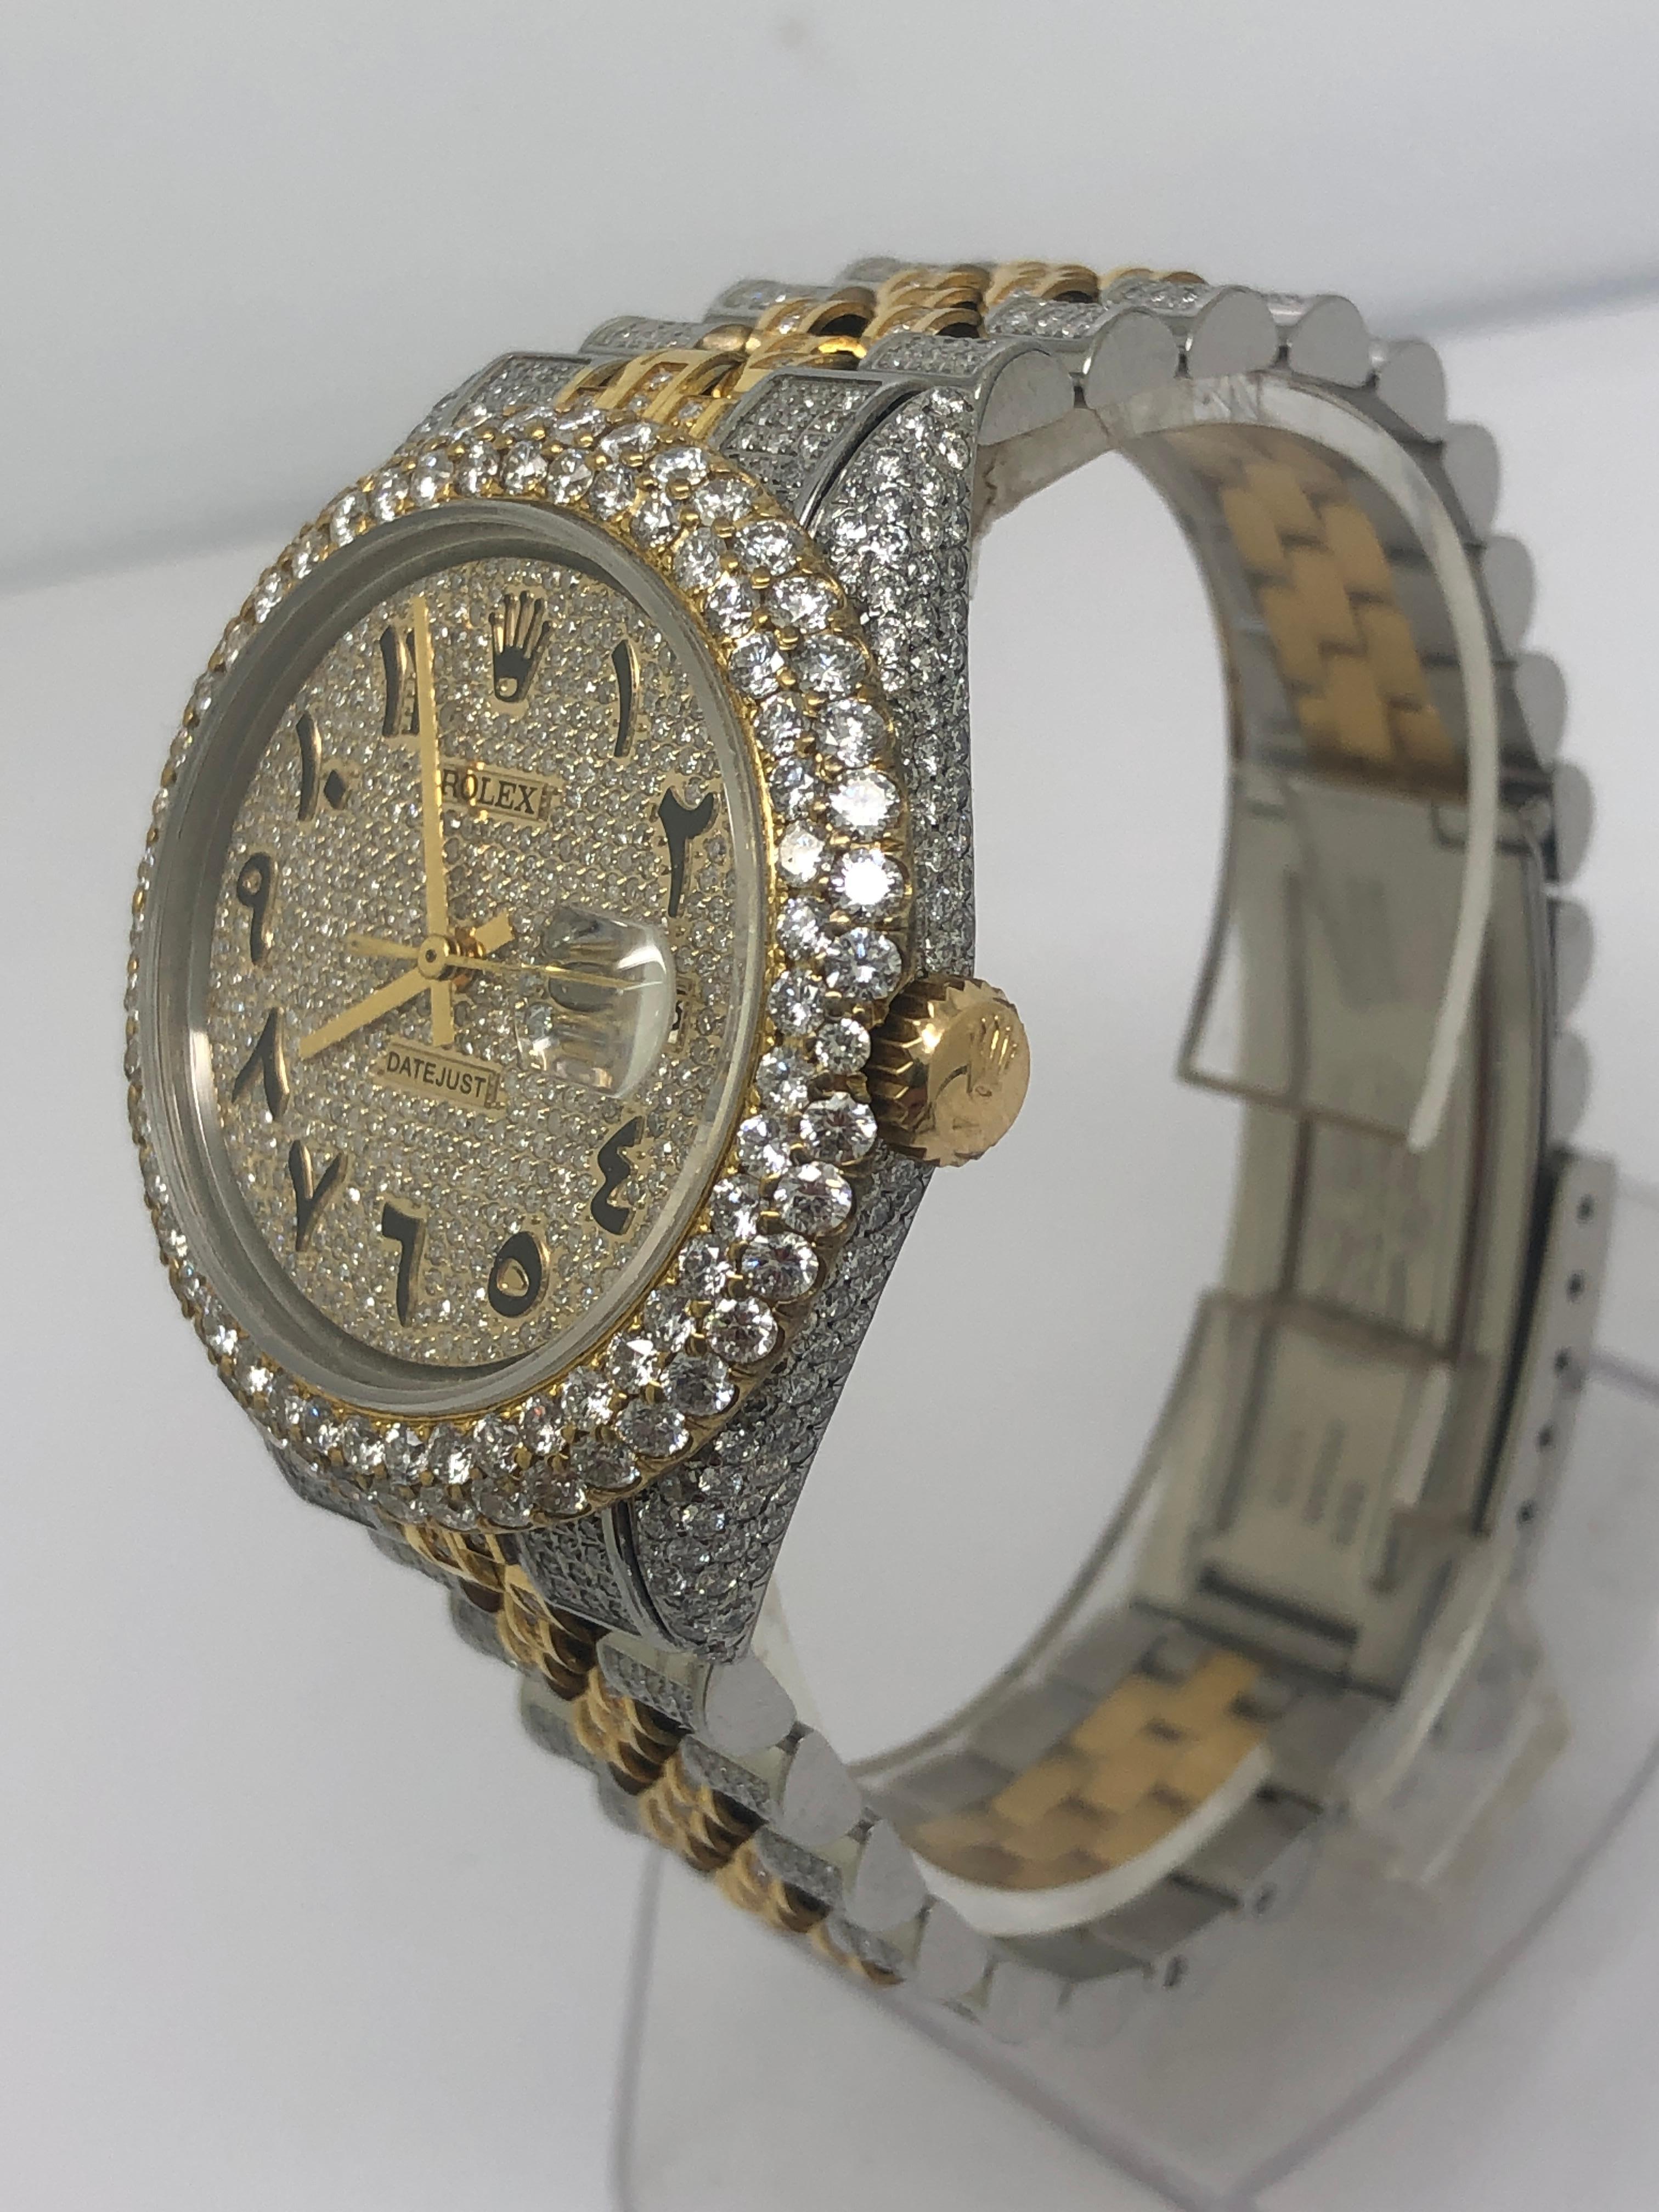 100% Authentique Rolex Datejust entièrement glacée avec des diamants naturels blancs de qualité collection

20 carats de diamants de qualité

bracelet en or jaune et acier inoxydable entièrement relié taille 9 pouces les liens peuvent être